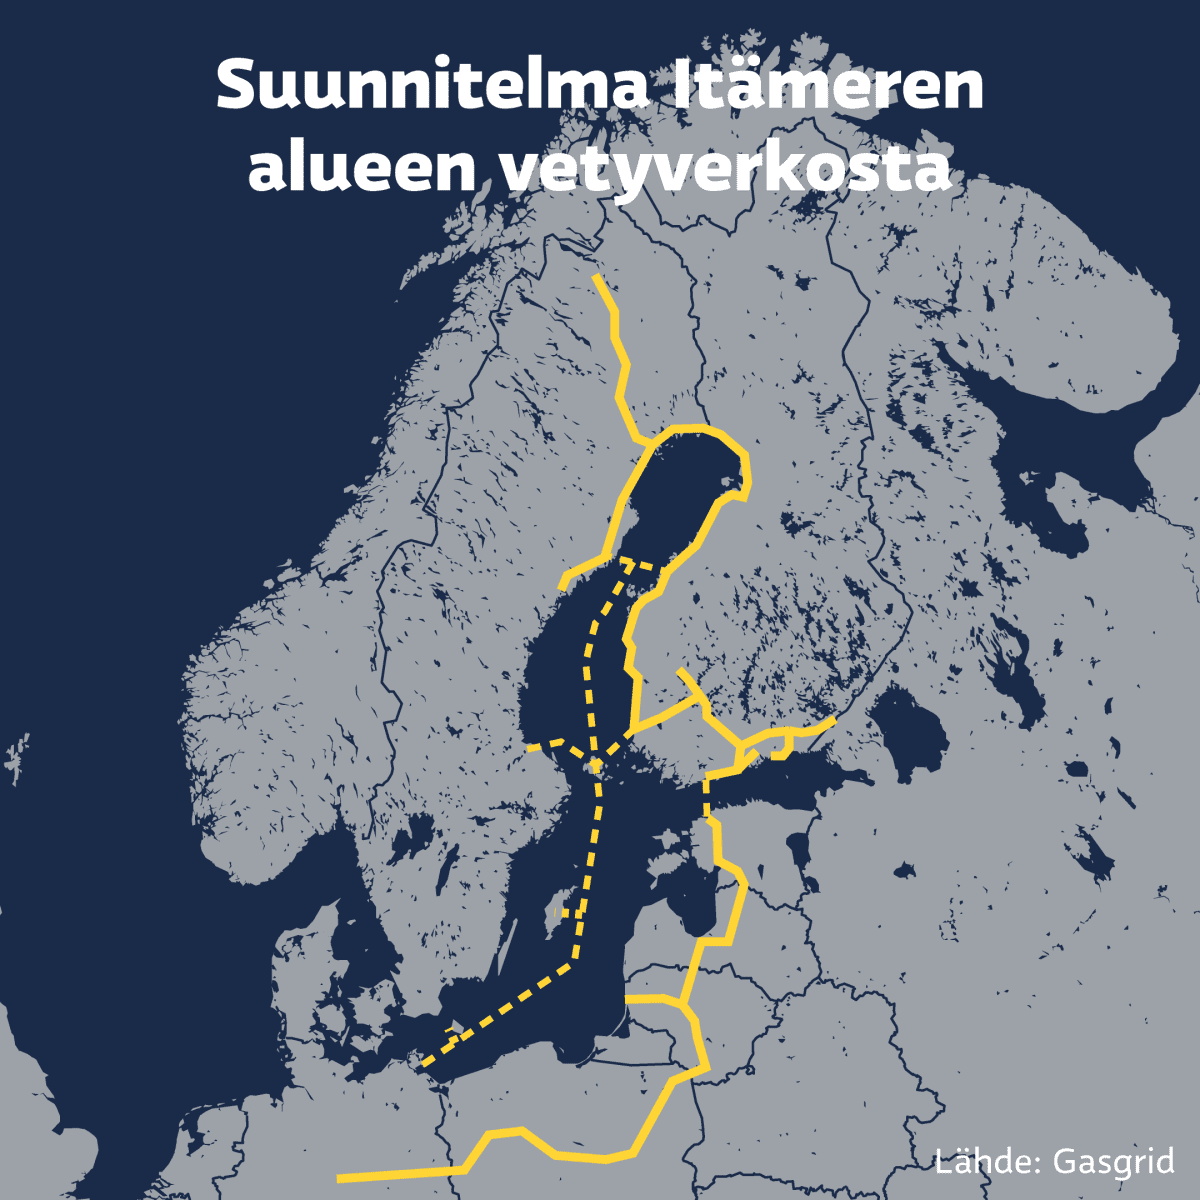 Suomi piirtää hurjia vetyputkisuunnitelmia, mutta rahat ovat vielä  kysymysmerkki – tältä voisi näyttää vetyverkosto Suomesta Eurooppaan